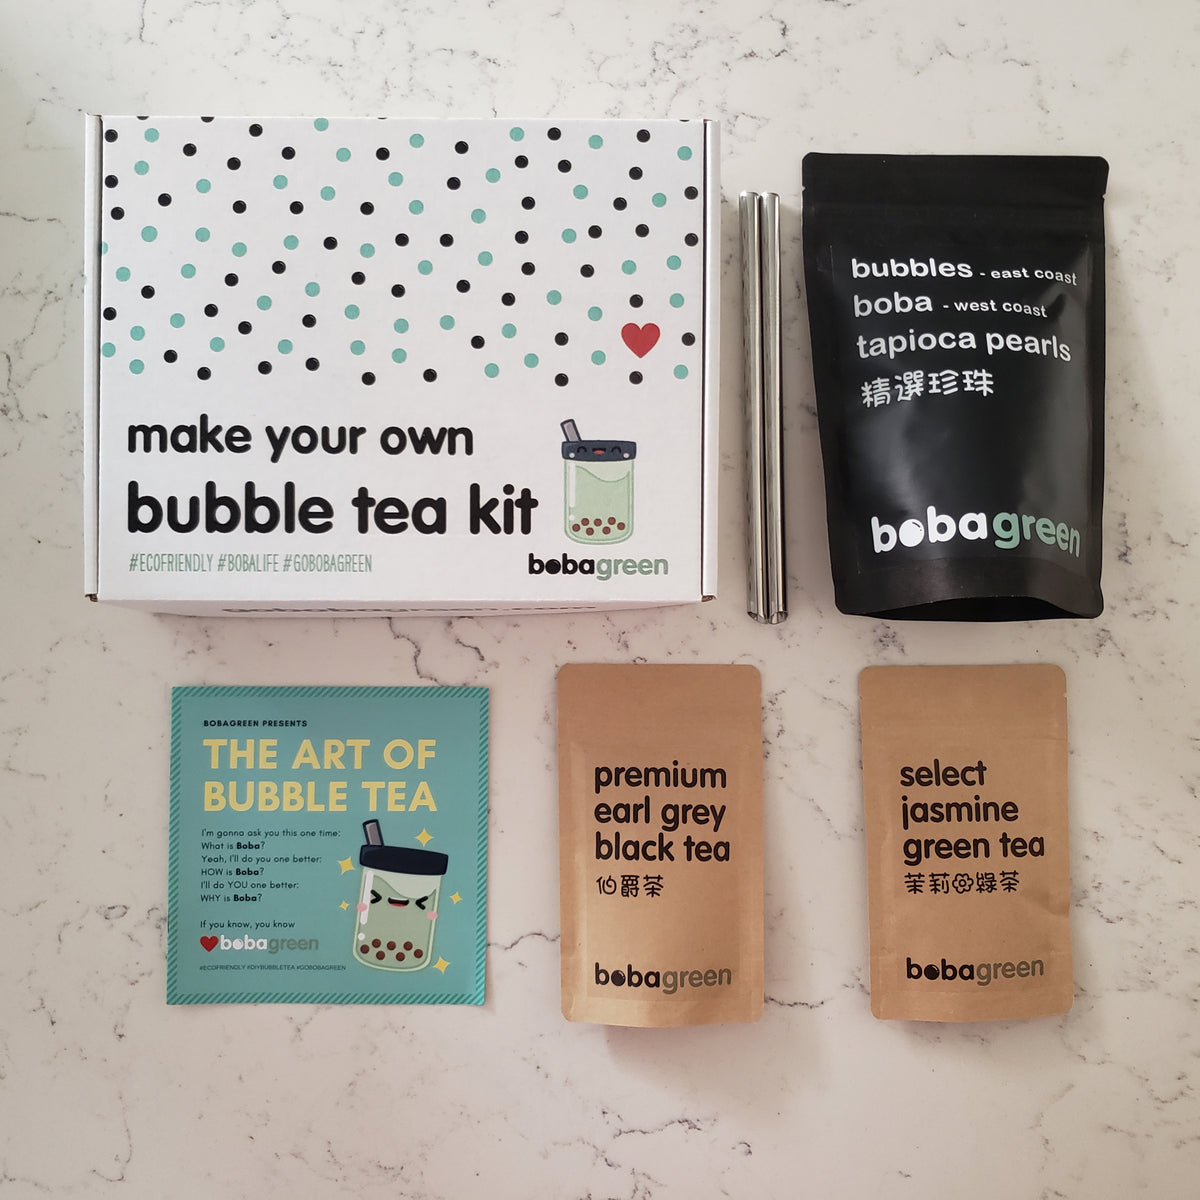 Introducing: DIY Bubble Tea kit!